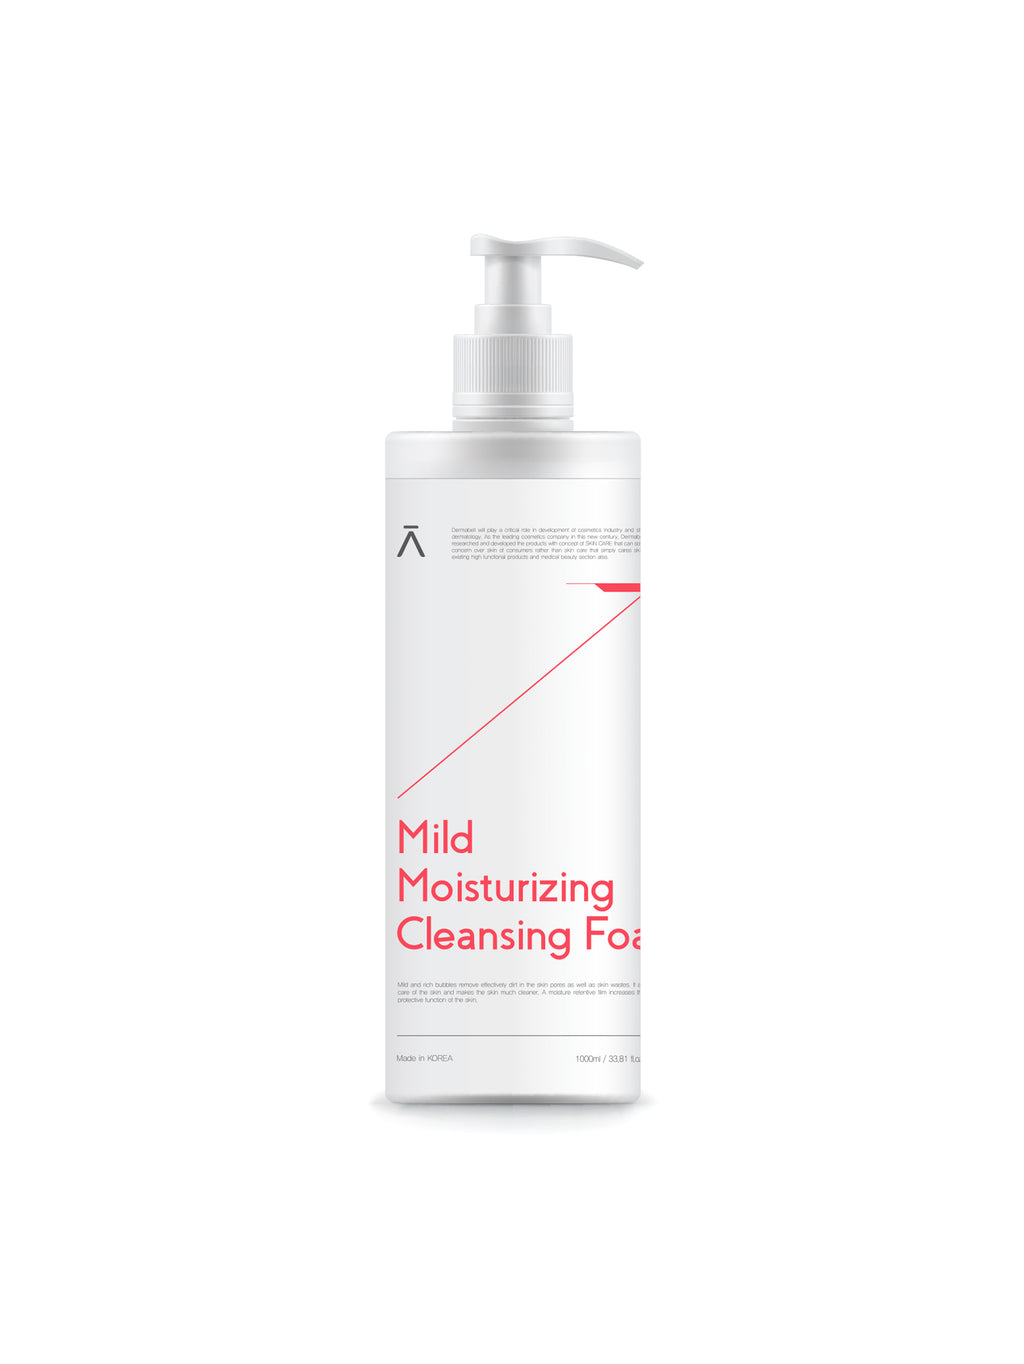 Mild Moisturizing Cleansing Foam (Soft & Moist Facial Foam) Cleanser by DERMABELL PRO